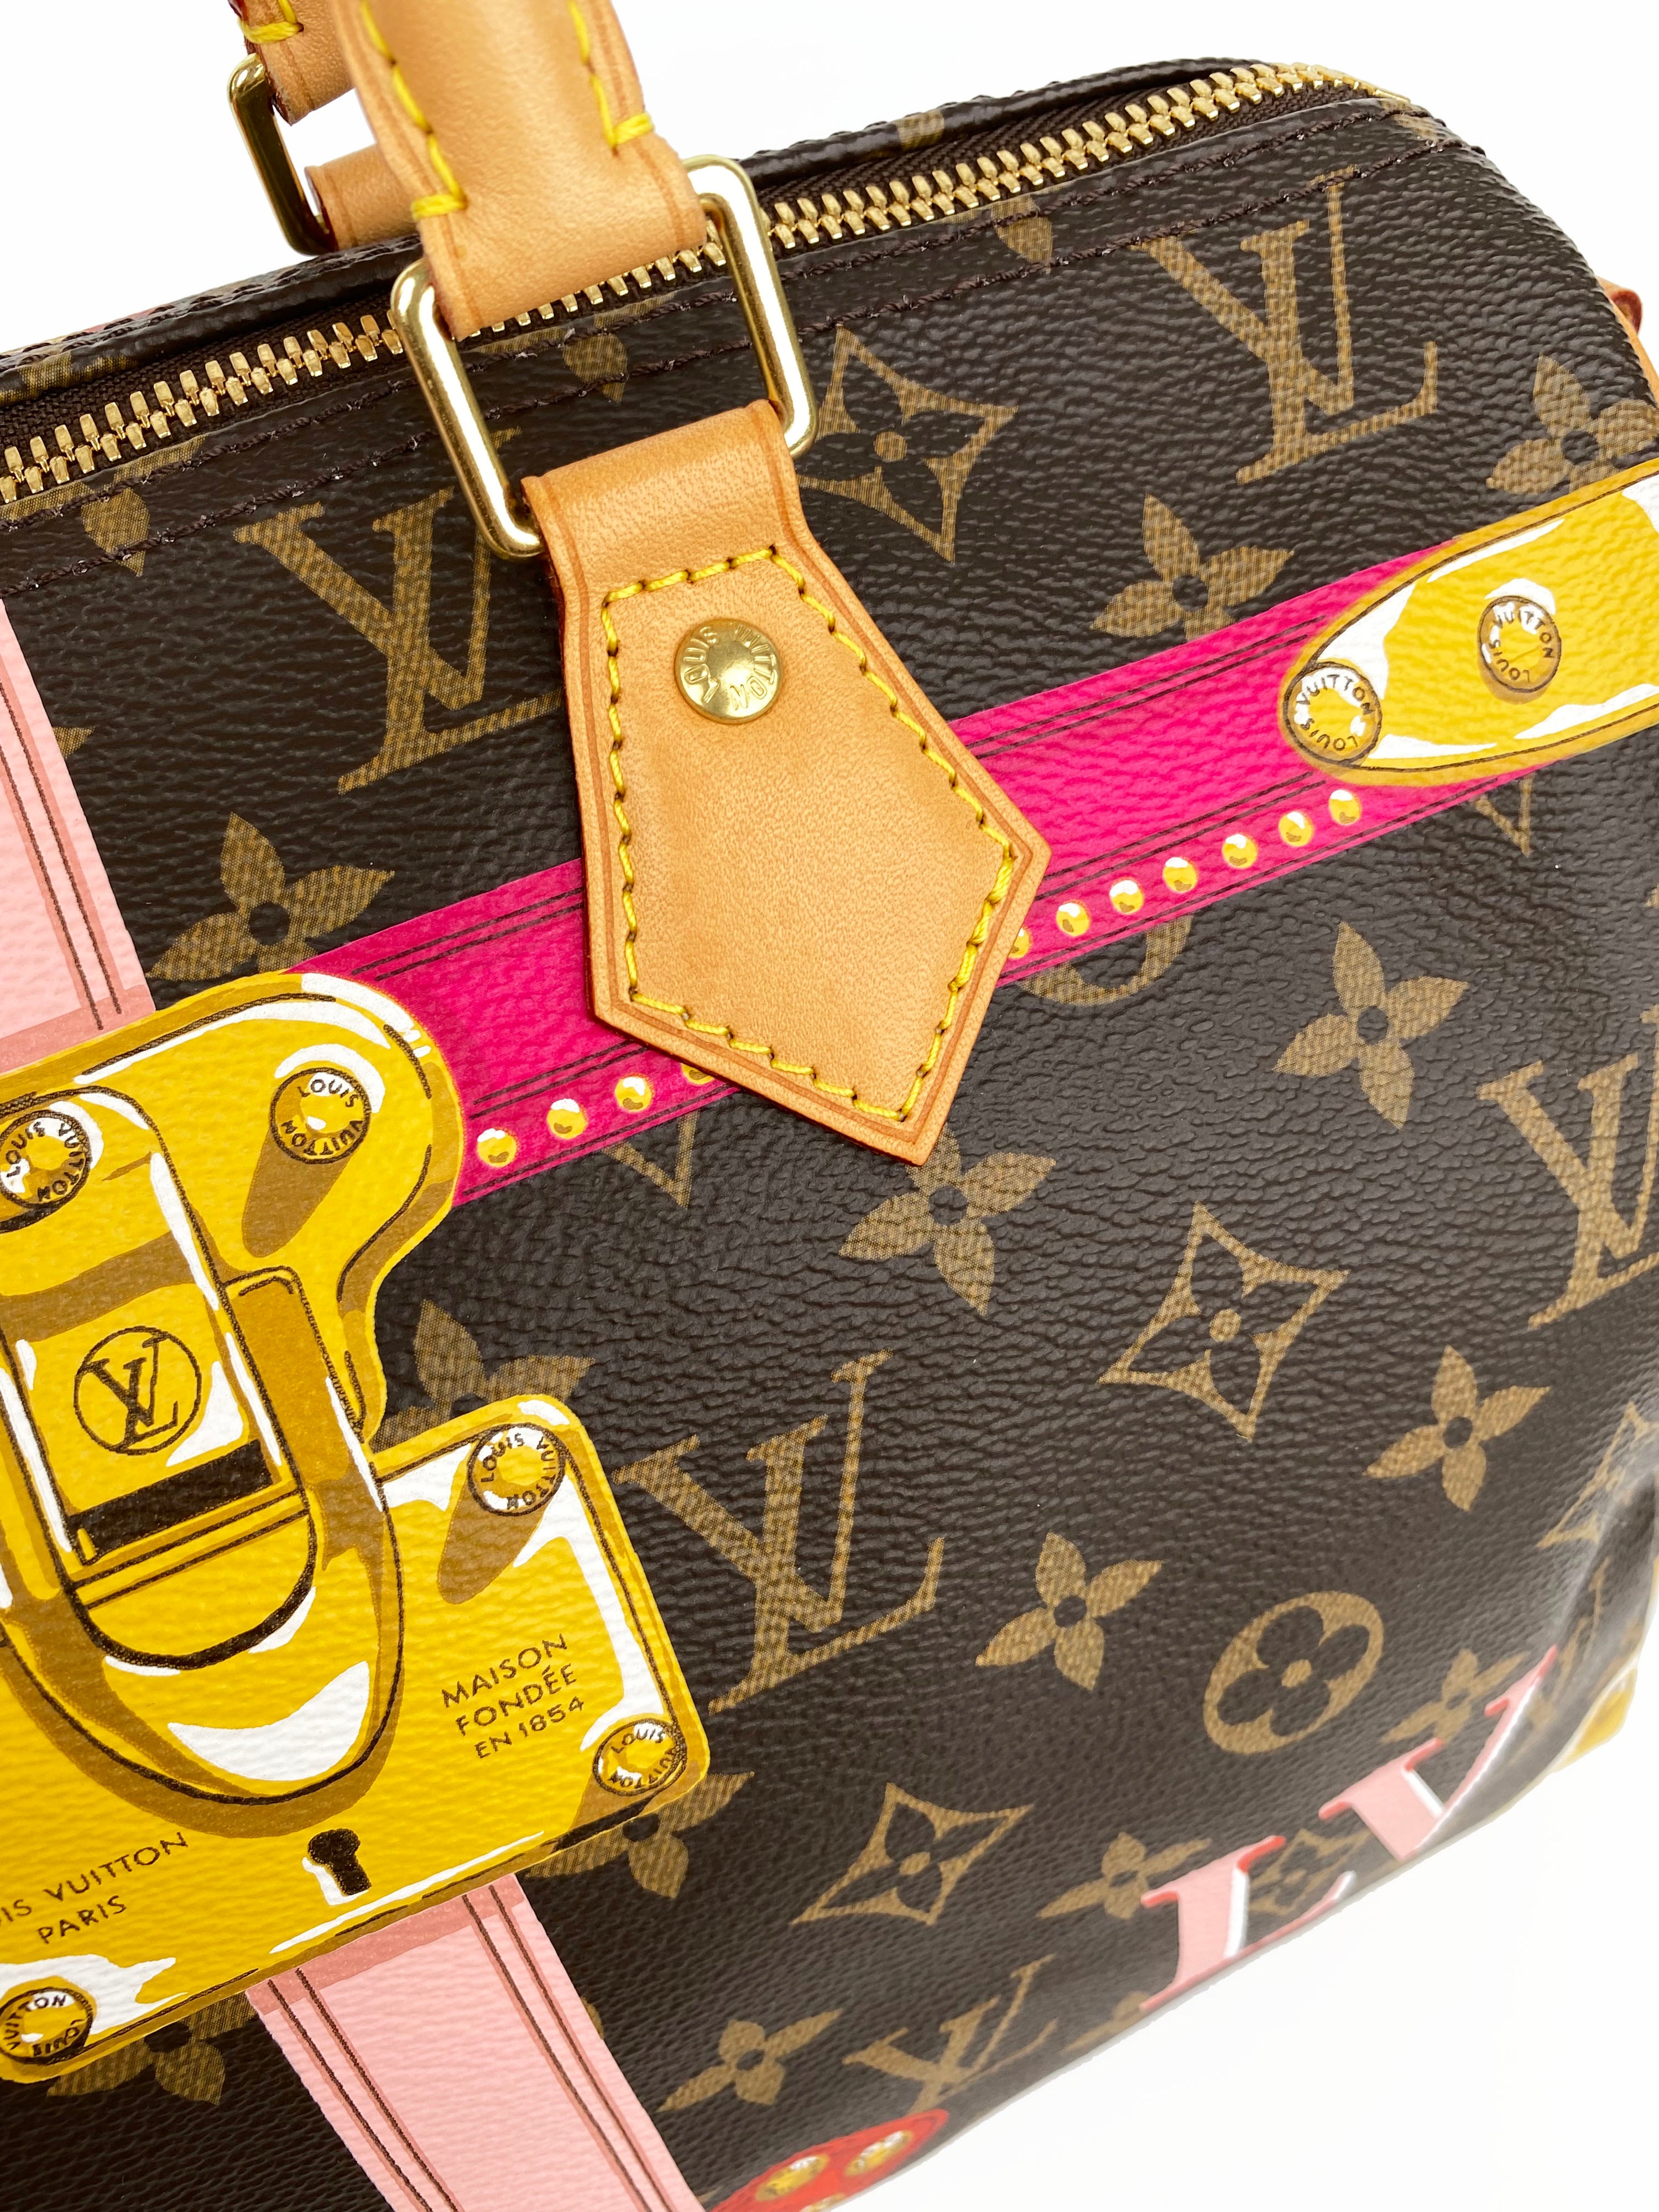 Louis Vuitton Summer Trunks Speedy 30 Bandouliere Bag